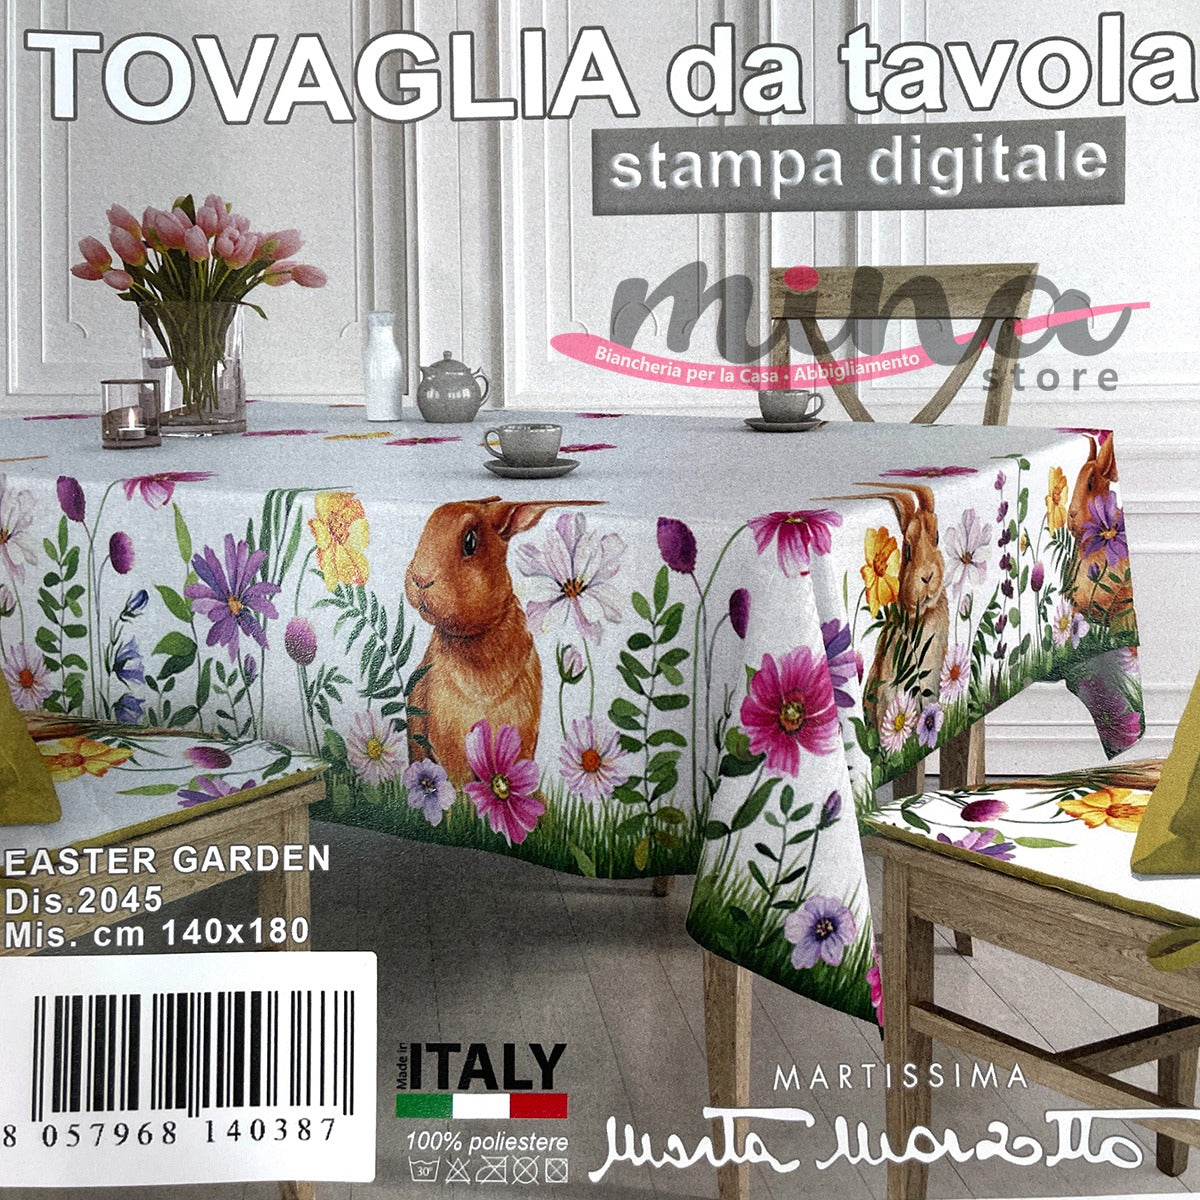 Tovaglia x6  EASTER GARDEN  dis. 2045 - Marta Marzotto, Made in Italy , tovaglia, copritavolo 0585